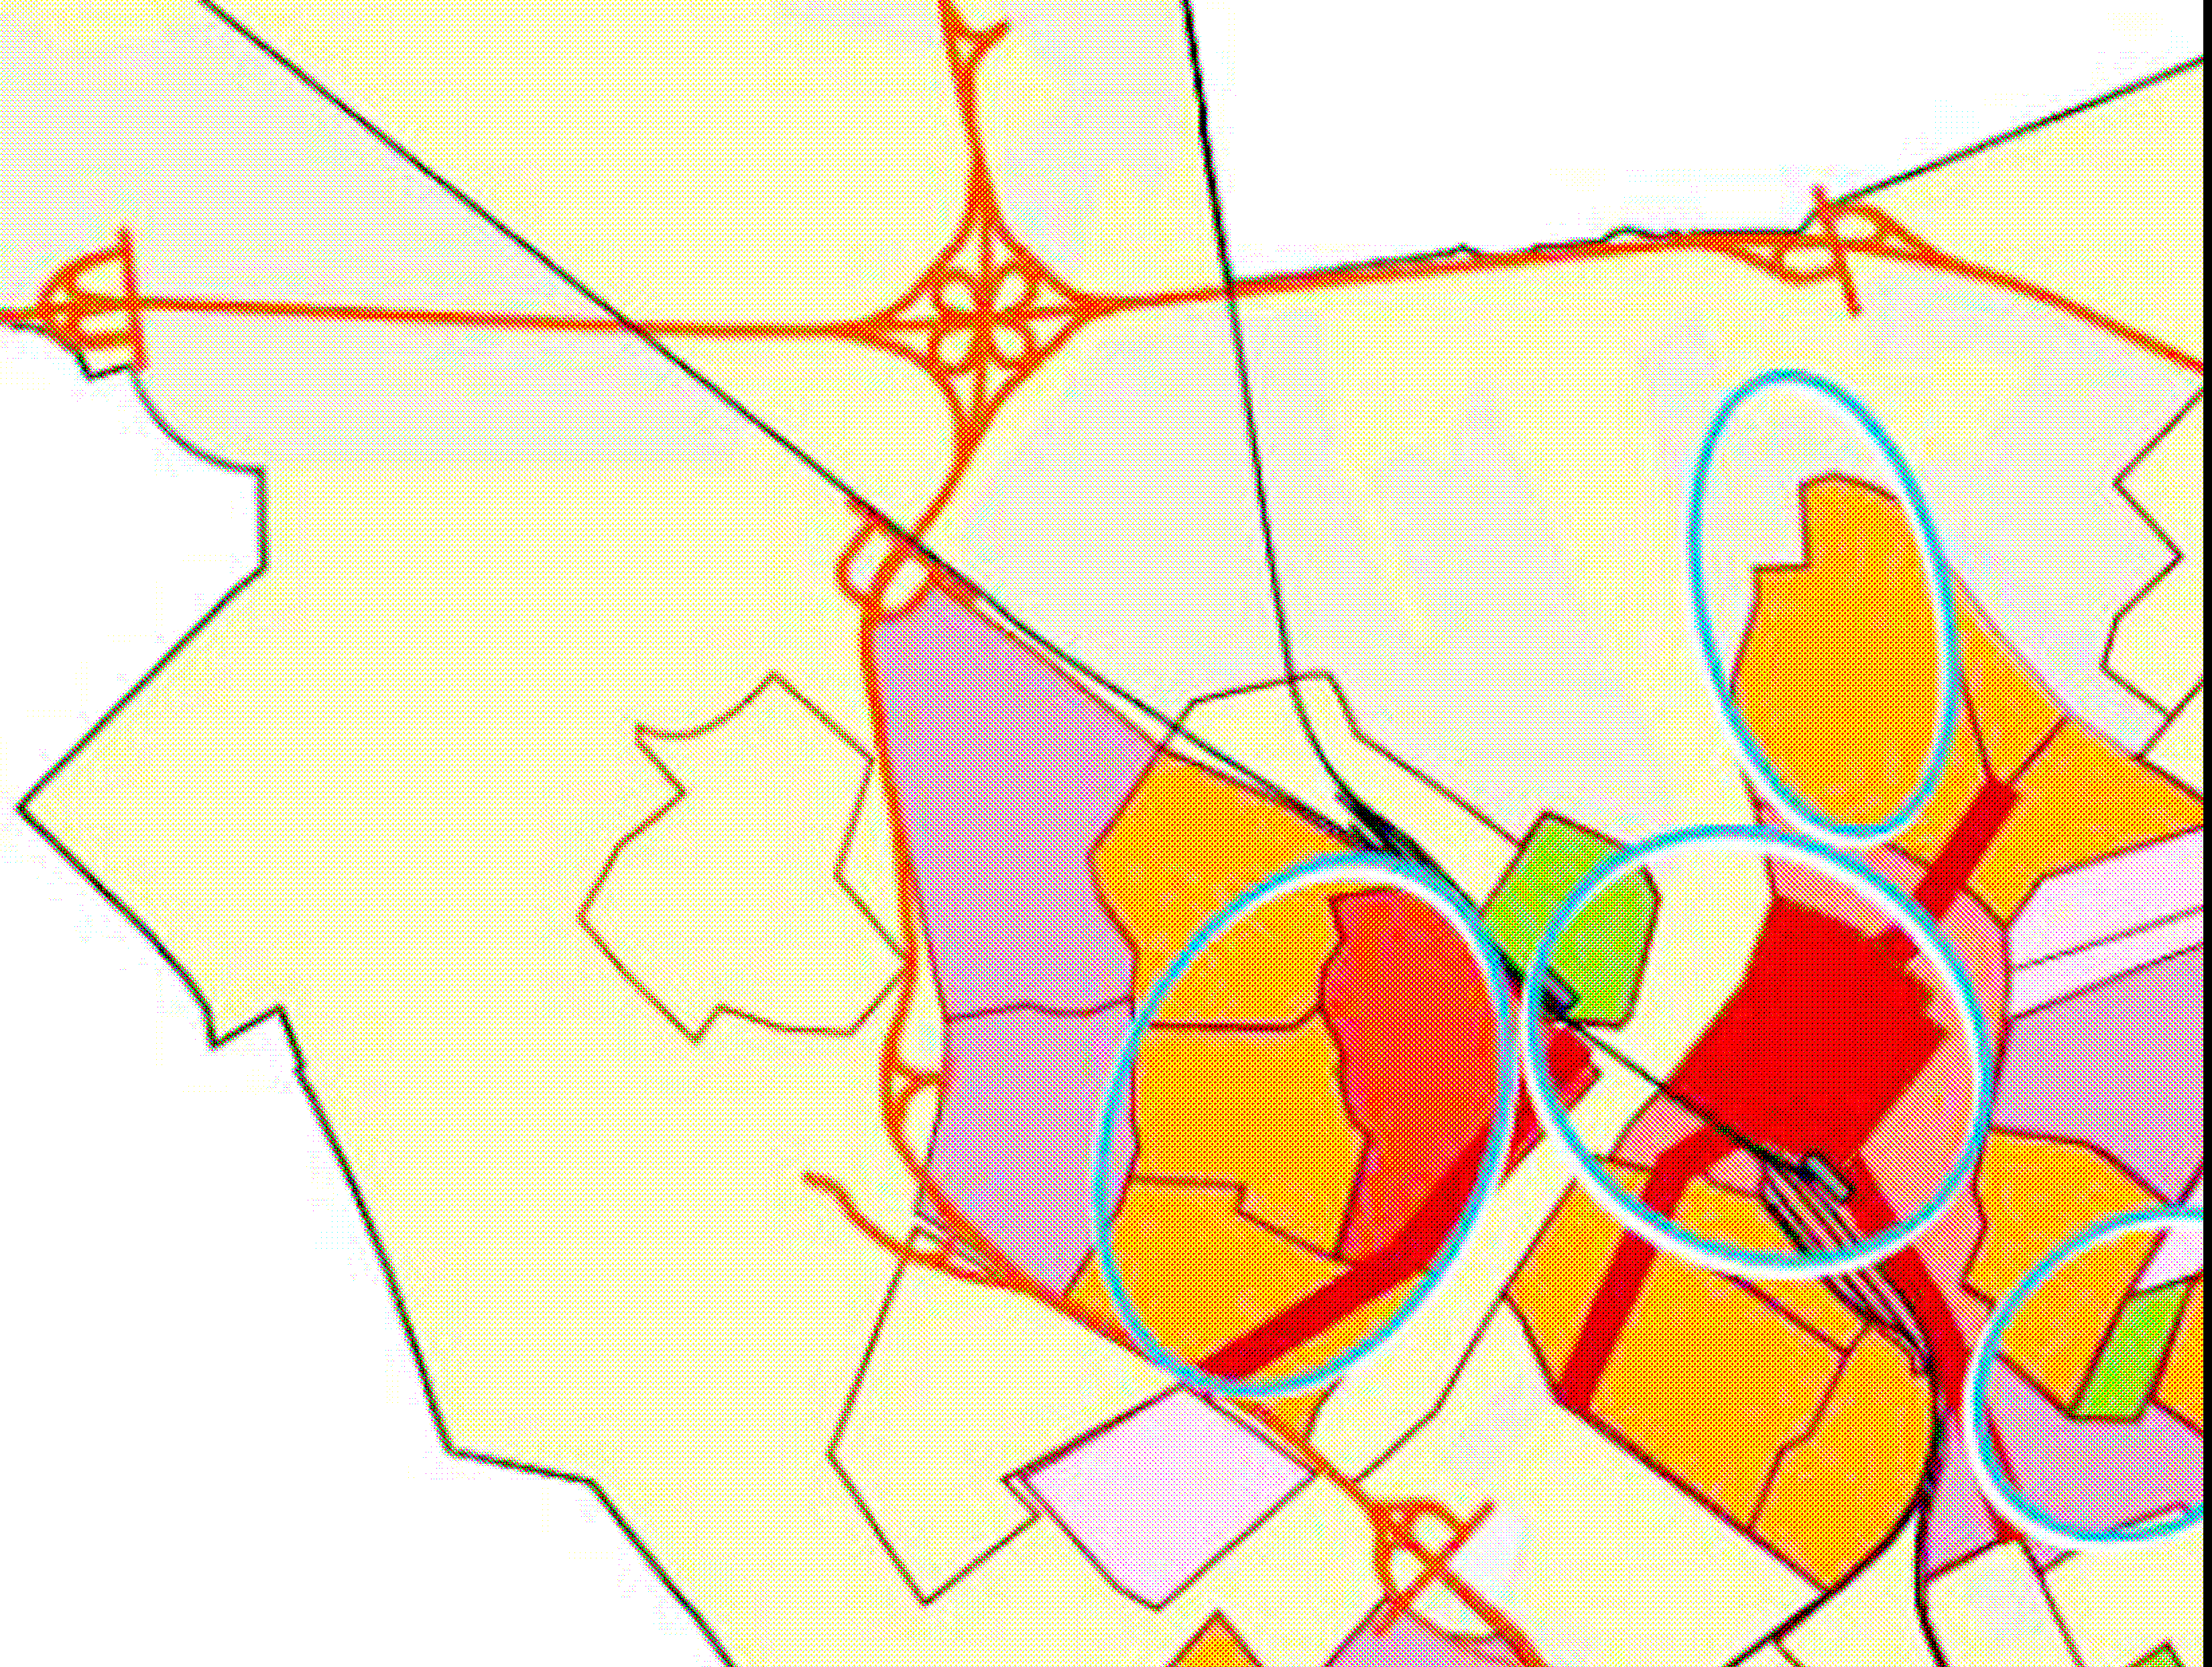 Ruimtelijke Structuurvisie 2005-2015 Door de gemeente Venlo is de Ruimtelijke Structuurvisie 2005-2015 opgesteld (vastgesteld 28 september 2005).